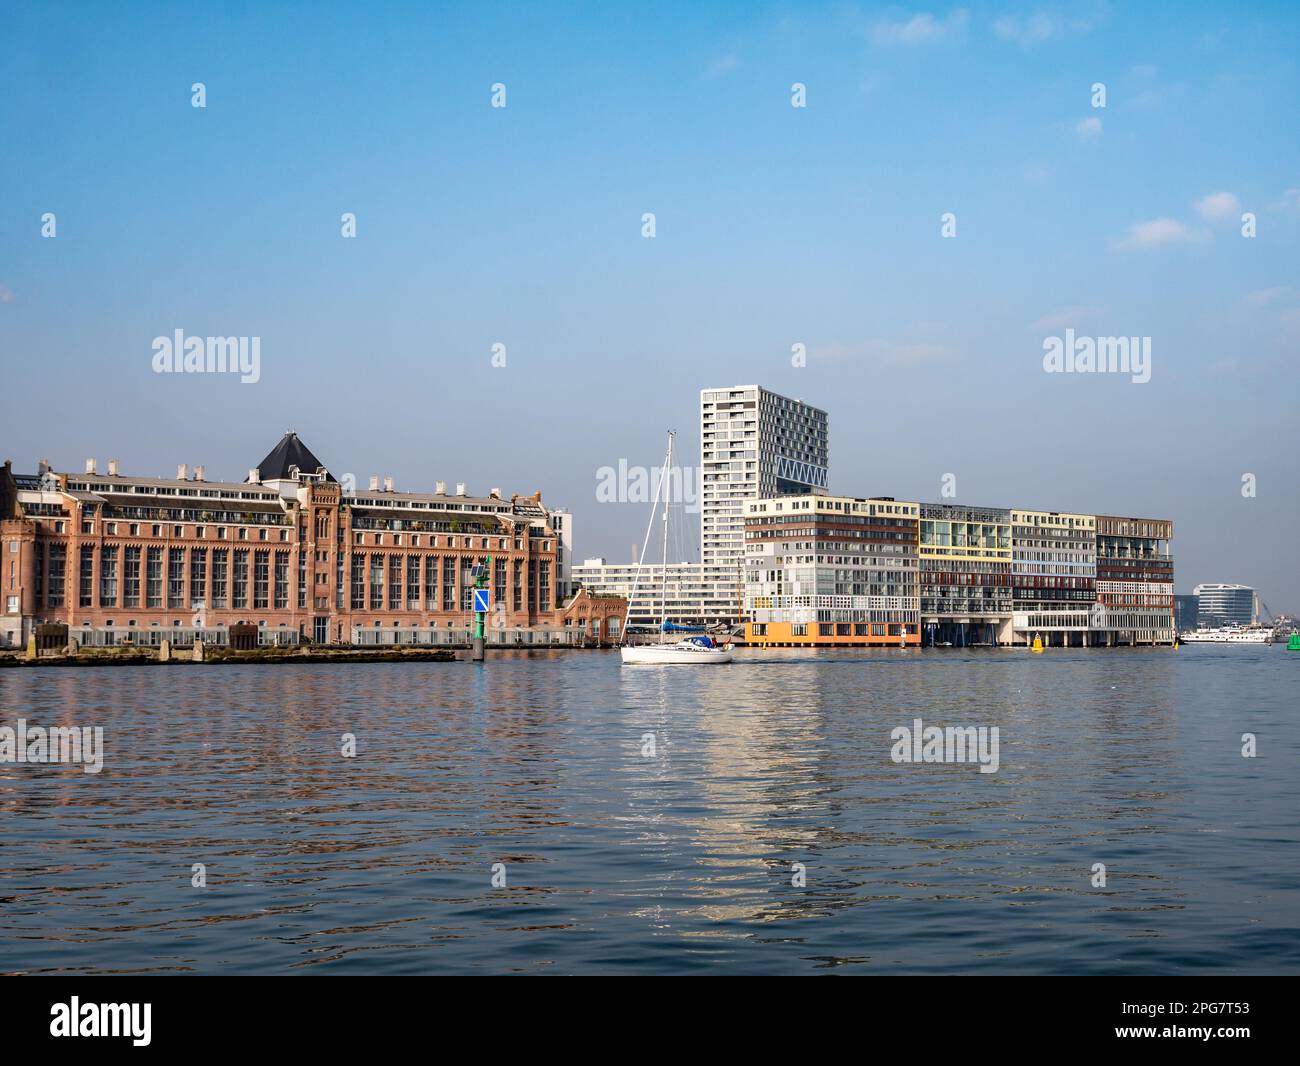 Appartamenti moderni Silodam a Houthaven sulla riva sud del fiume IJ, Amsterdam, Paesi Bassi Foto Stock